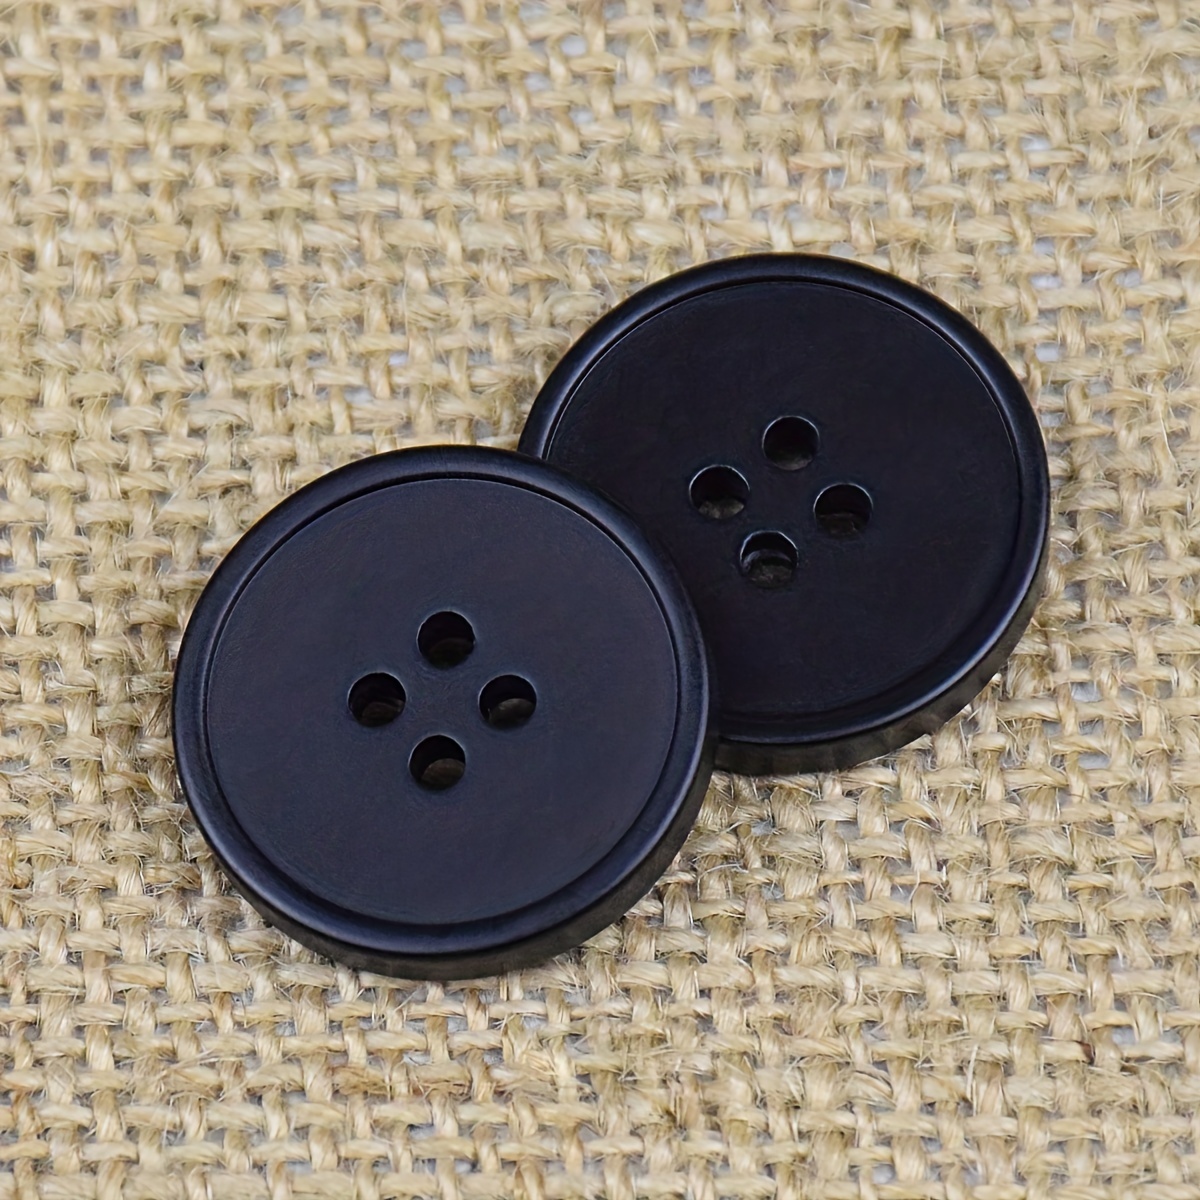 6pcs/lot Vintage Buttons for Luxury Suit Blazer Jacket Jeans Uniform Women  Cardigan Black Brown Buttons Sewing Accessories